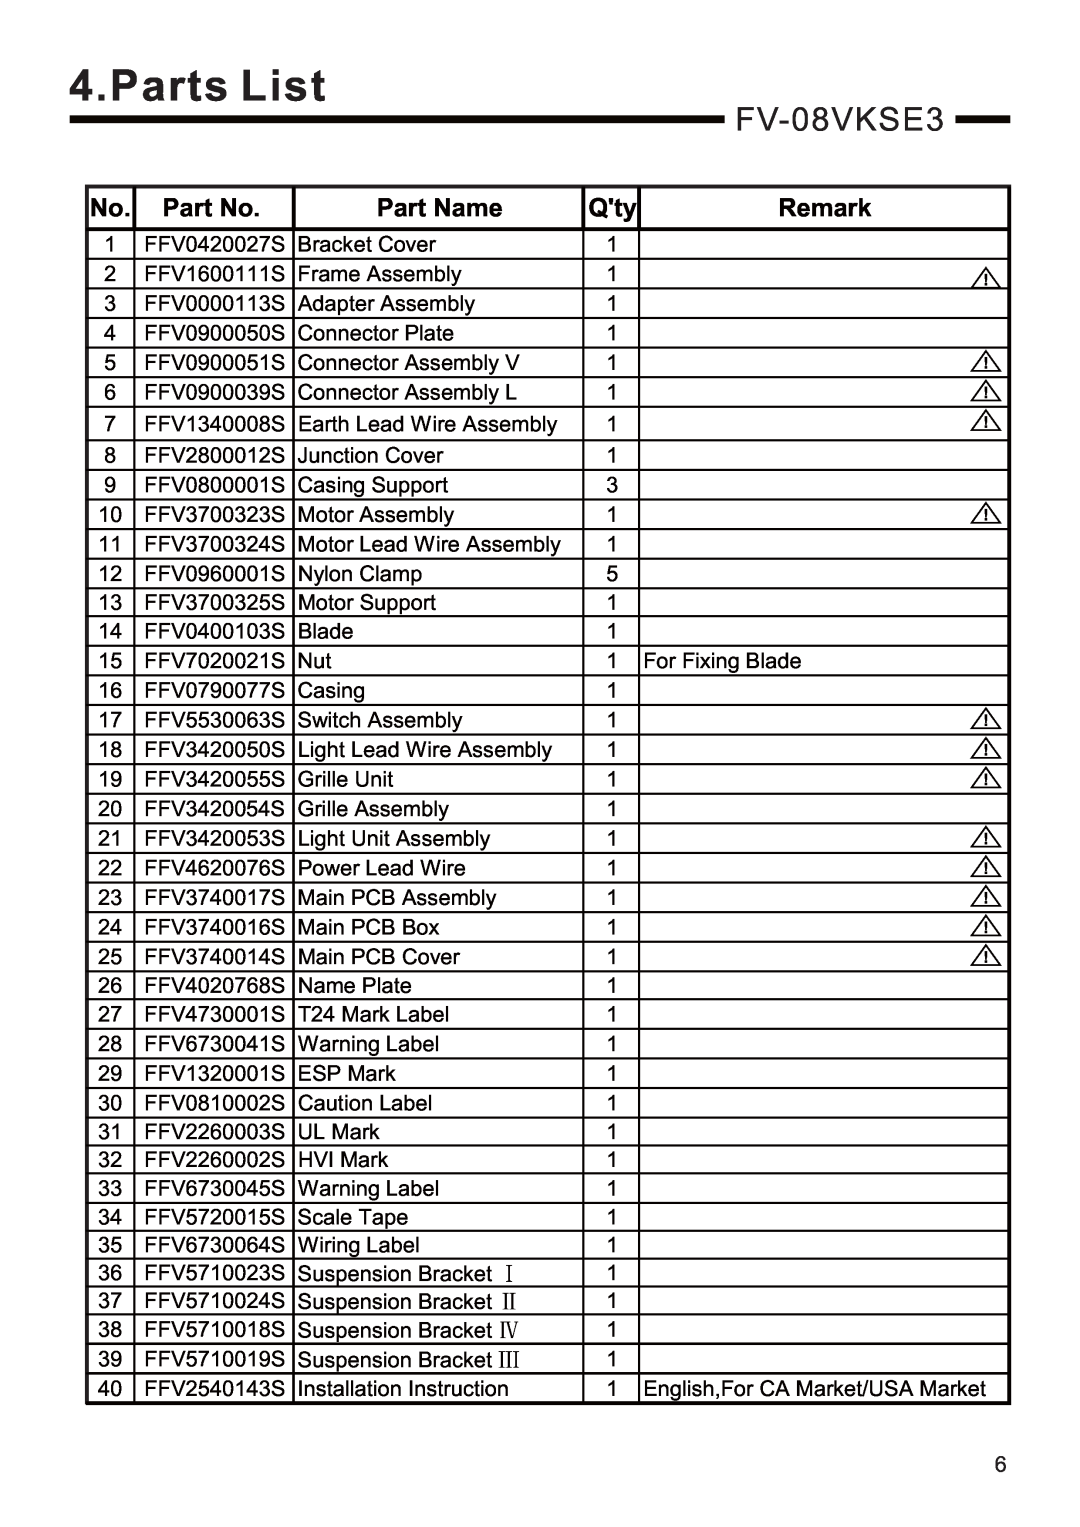 Panasonic FV-08VKME3 service manual Parts List, FV-08VKSE3, Part Name, Remark 